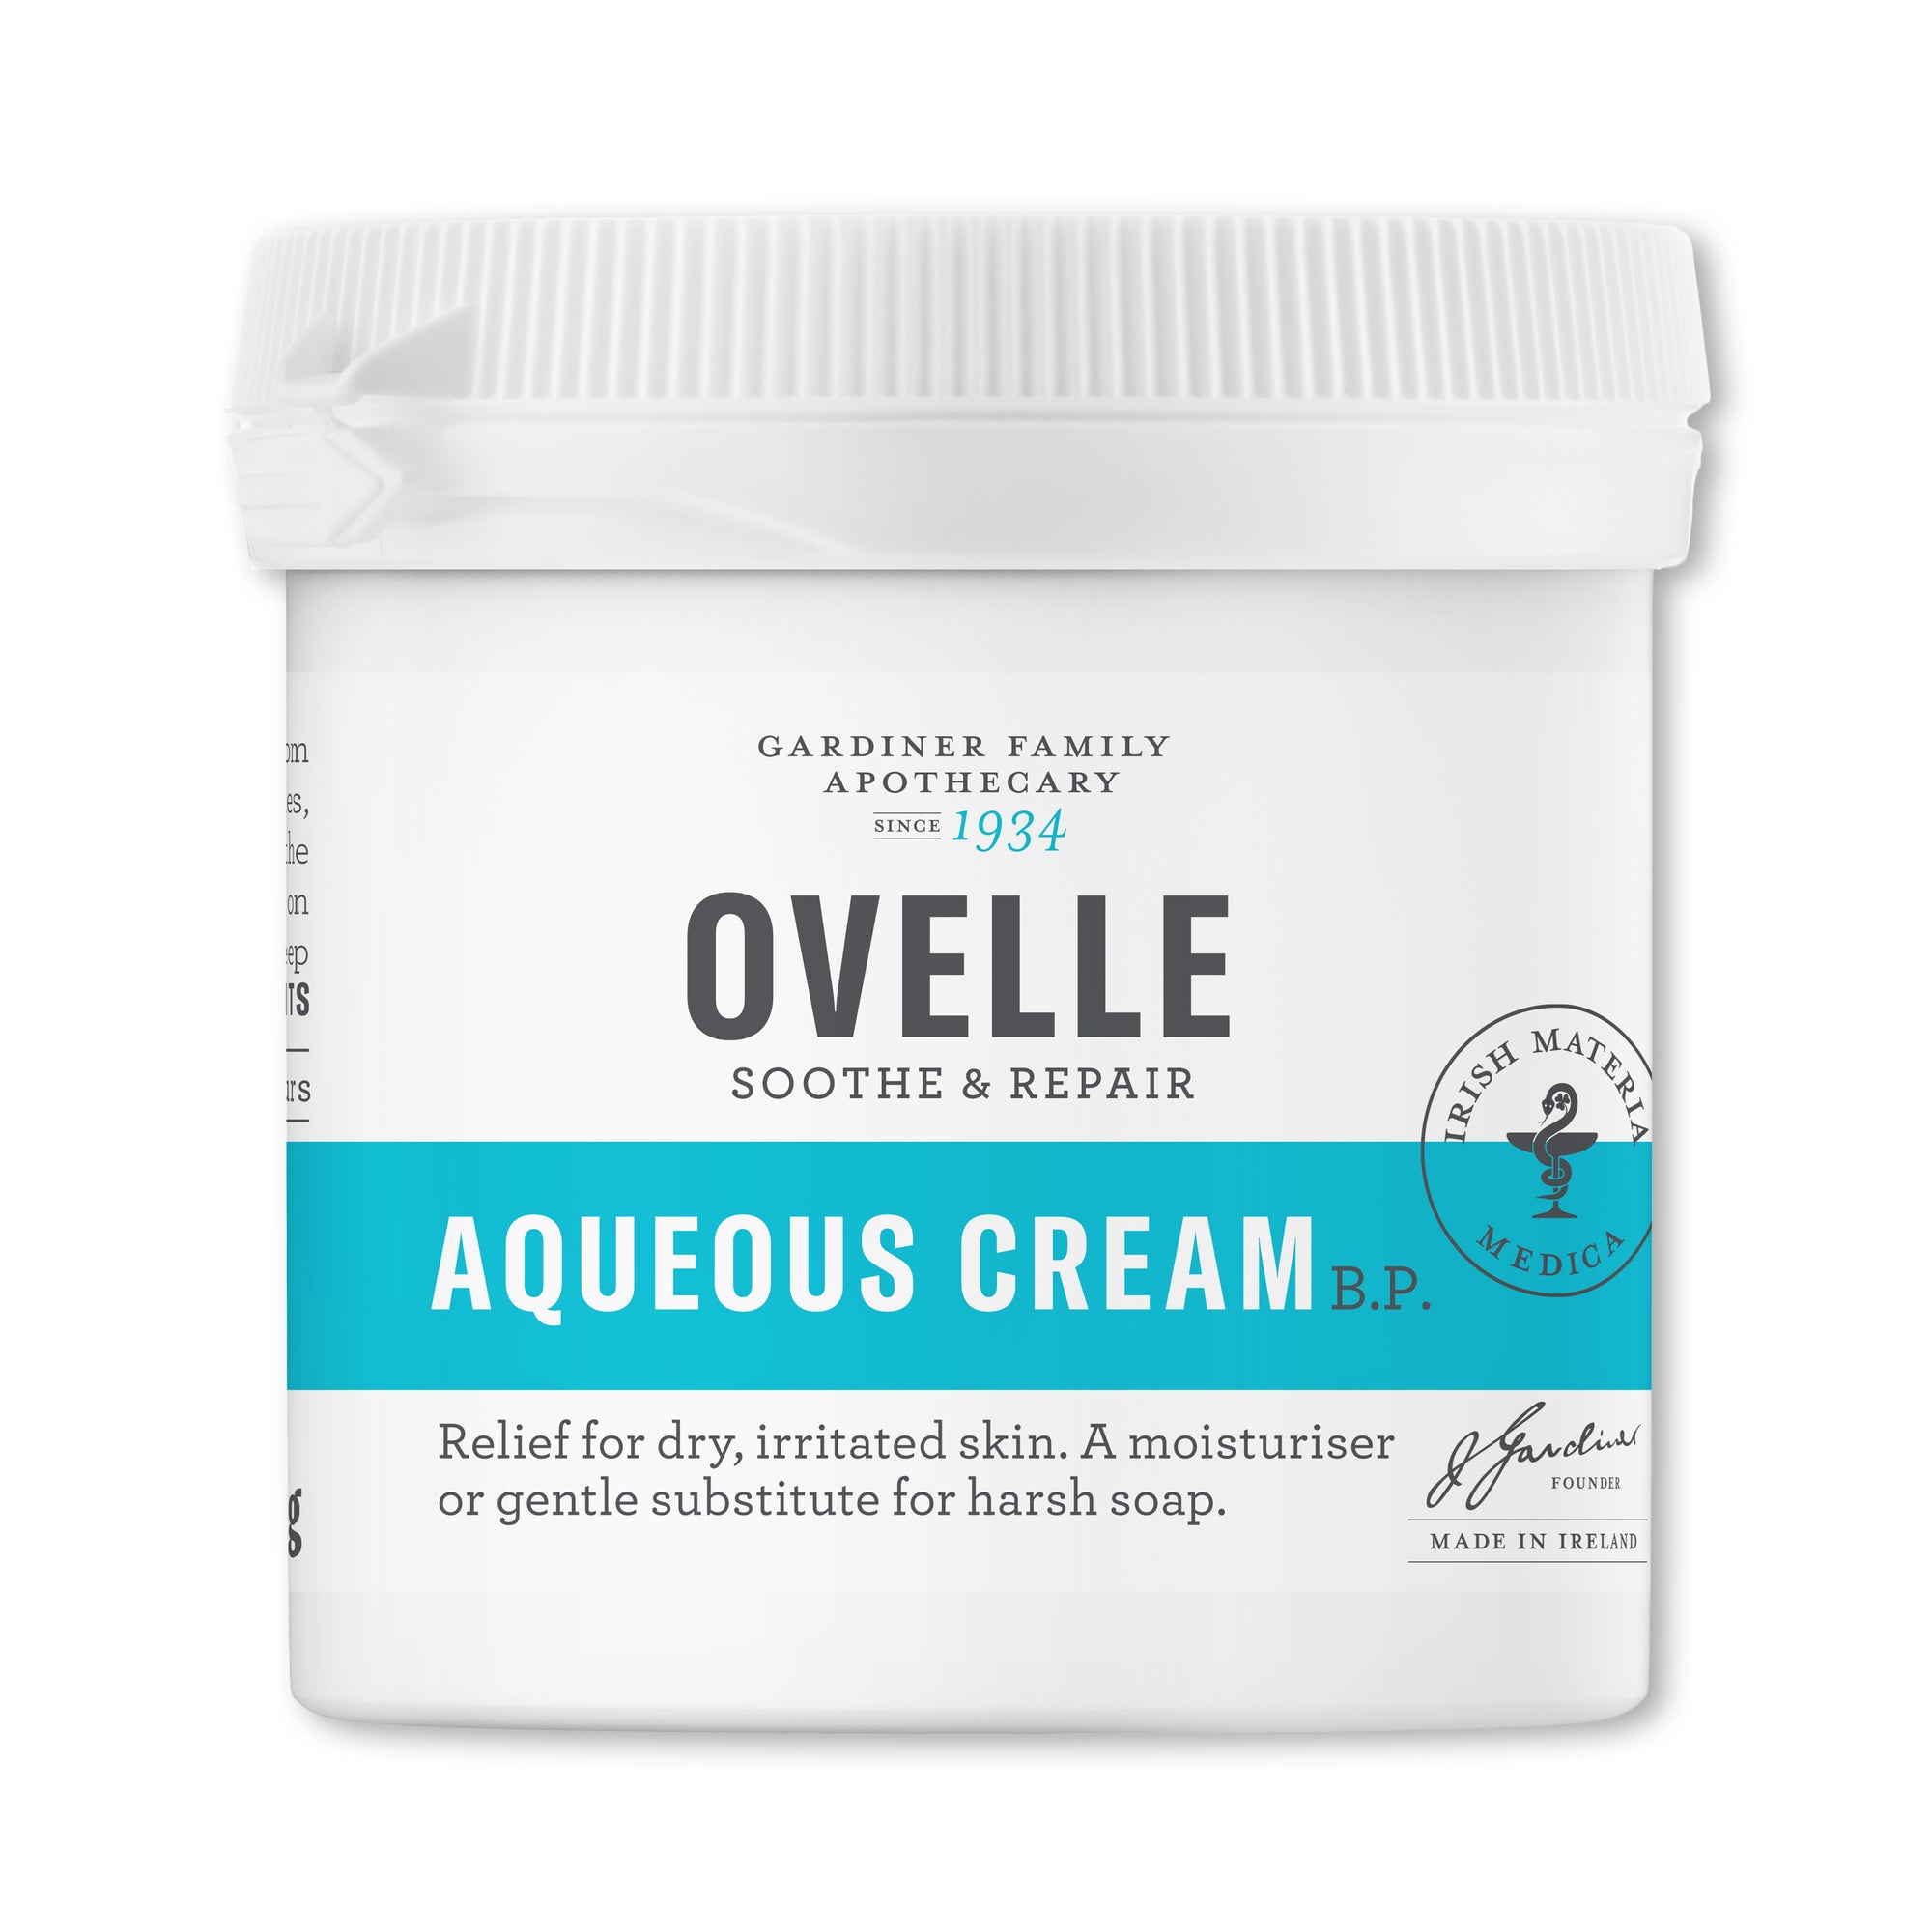 Ovelle 滋潤霜100毫升 / Ovelle Aqueous Cream B.P. 100g